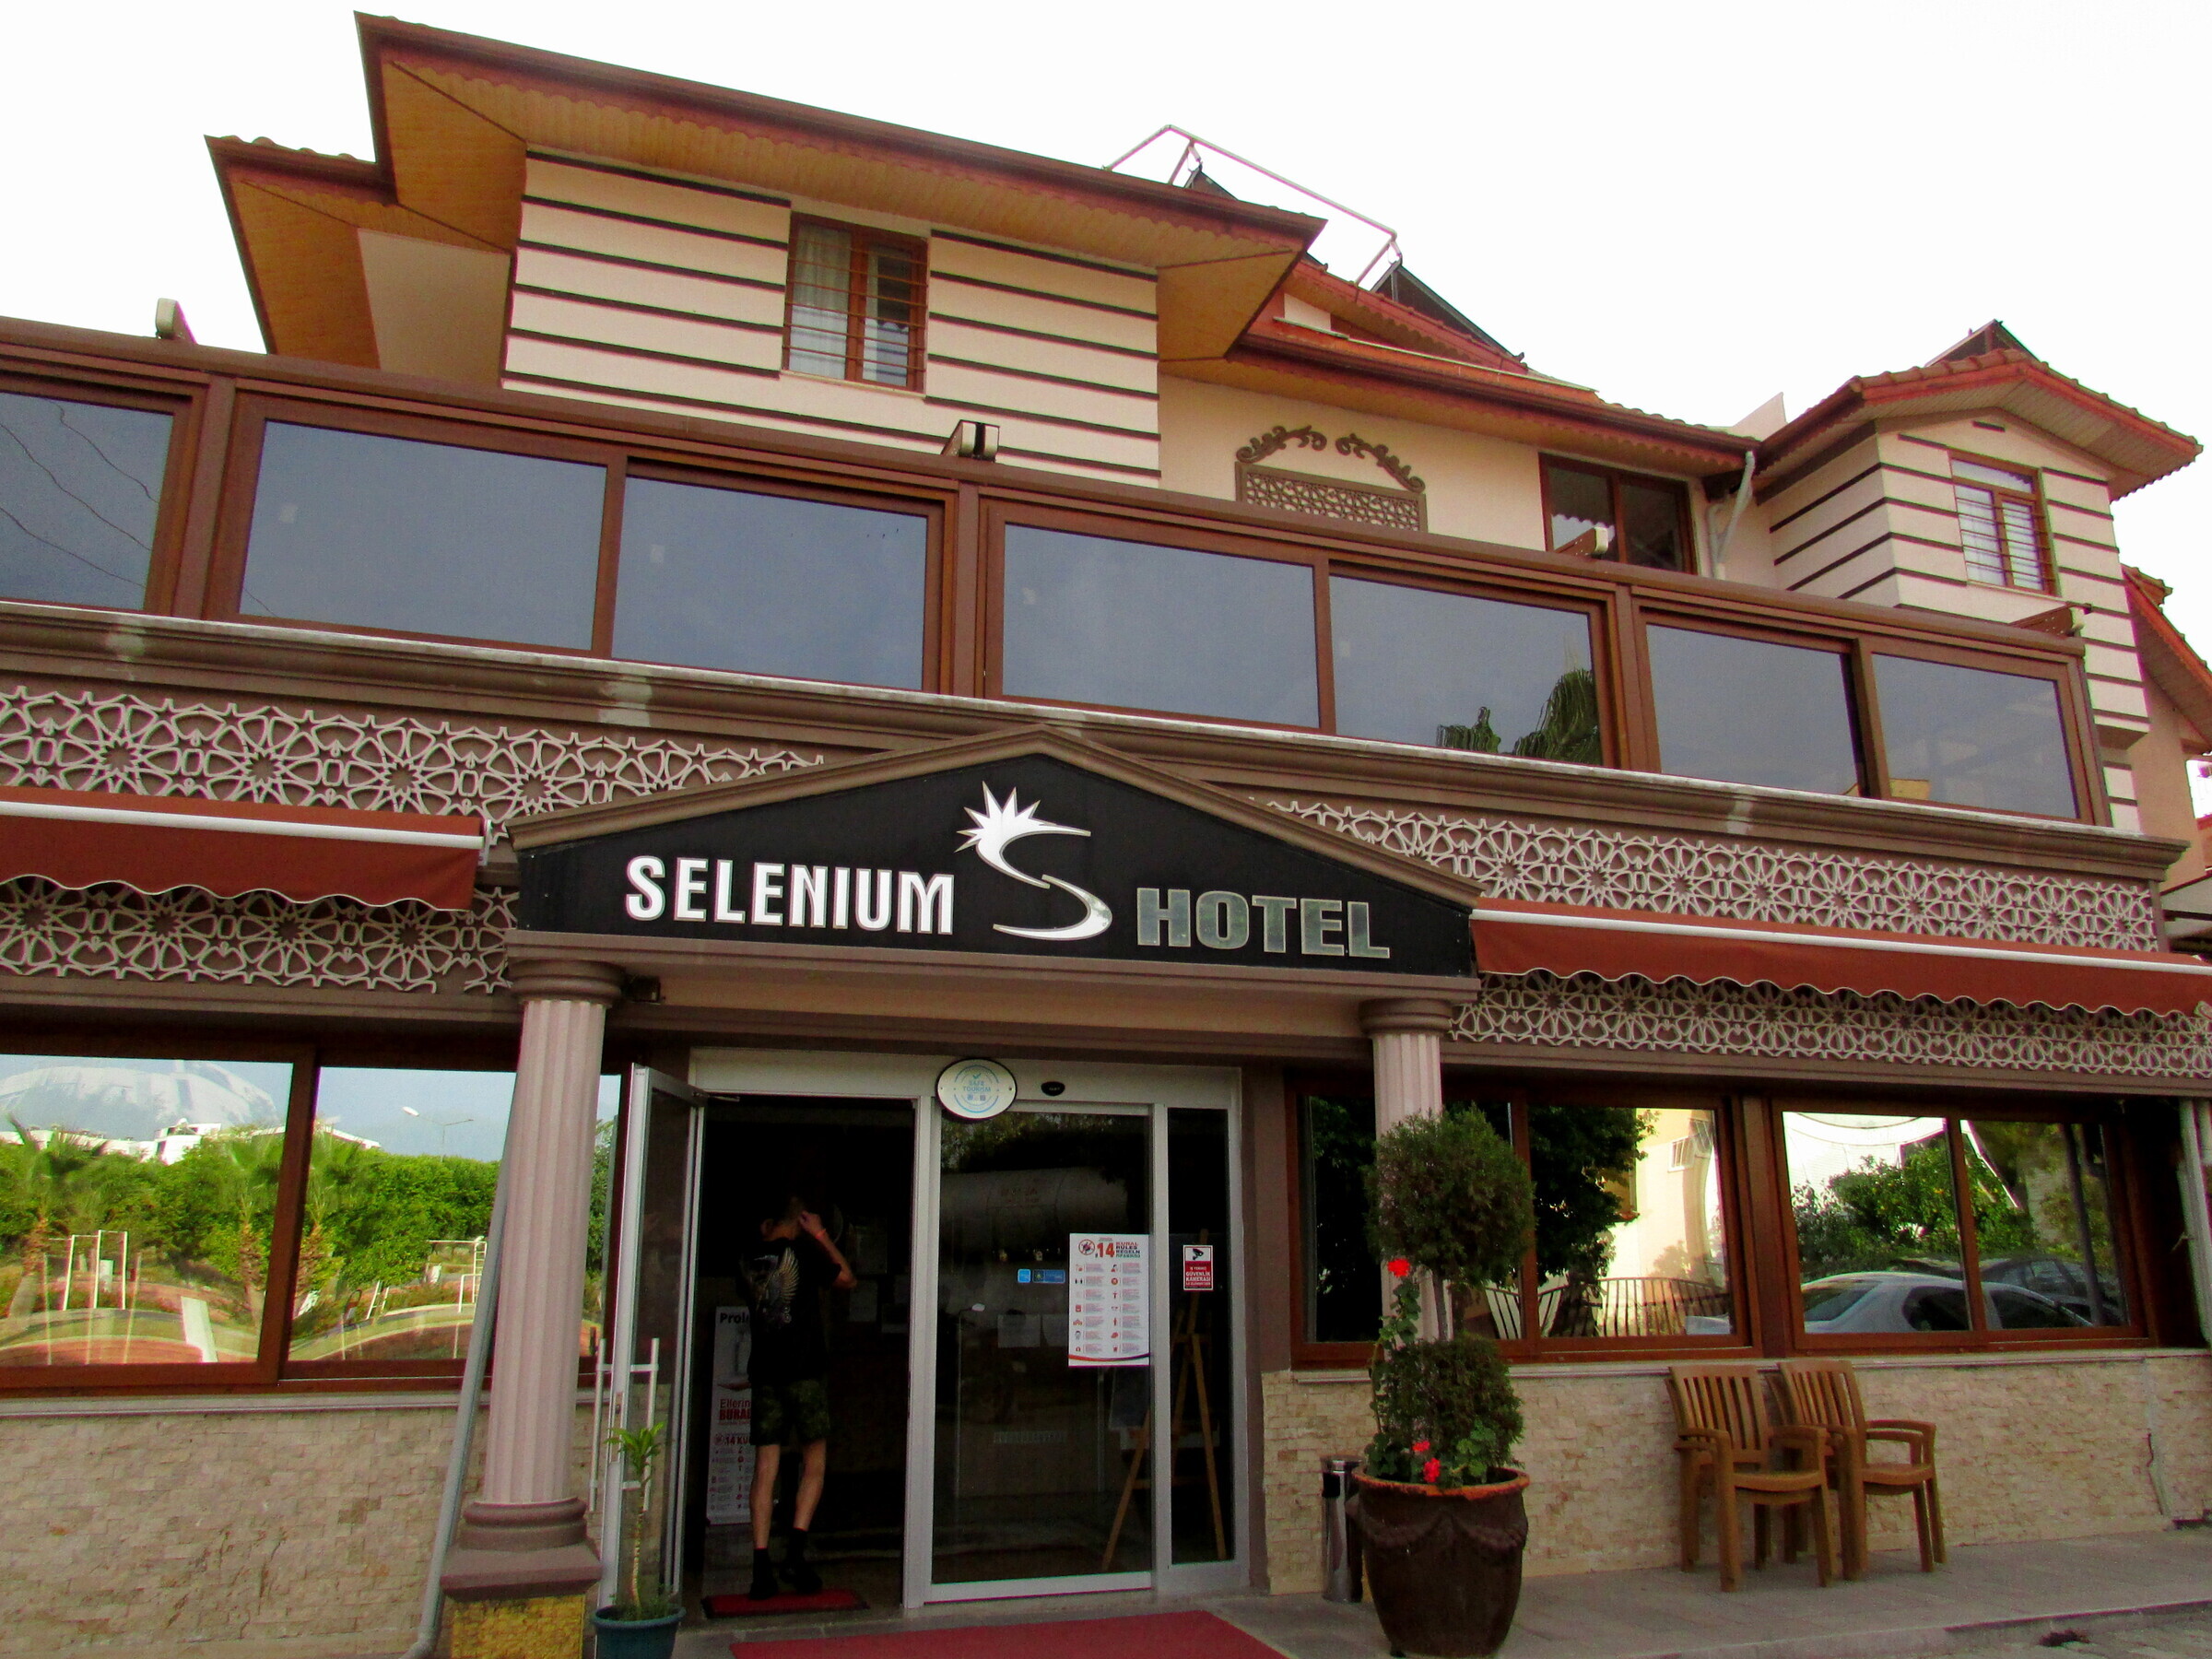 Гостиница селен. Отель Selenium Сиде. Селениум Турция отель Сиде. Сиде / Side Selenium Hotel 4*. Selenium Hotel 3*.